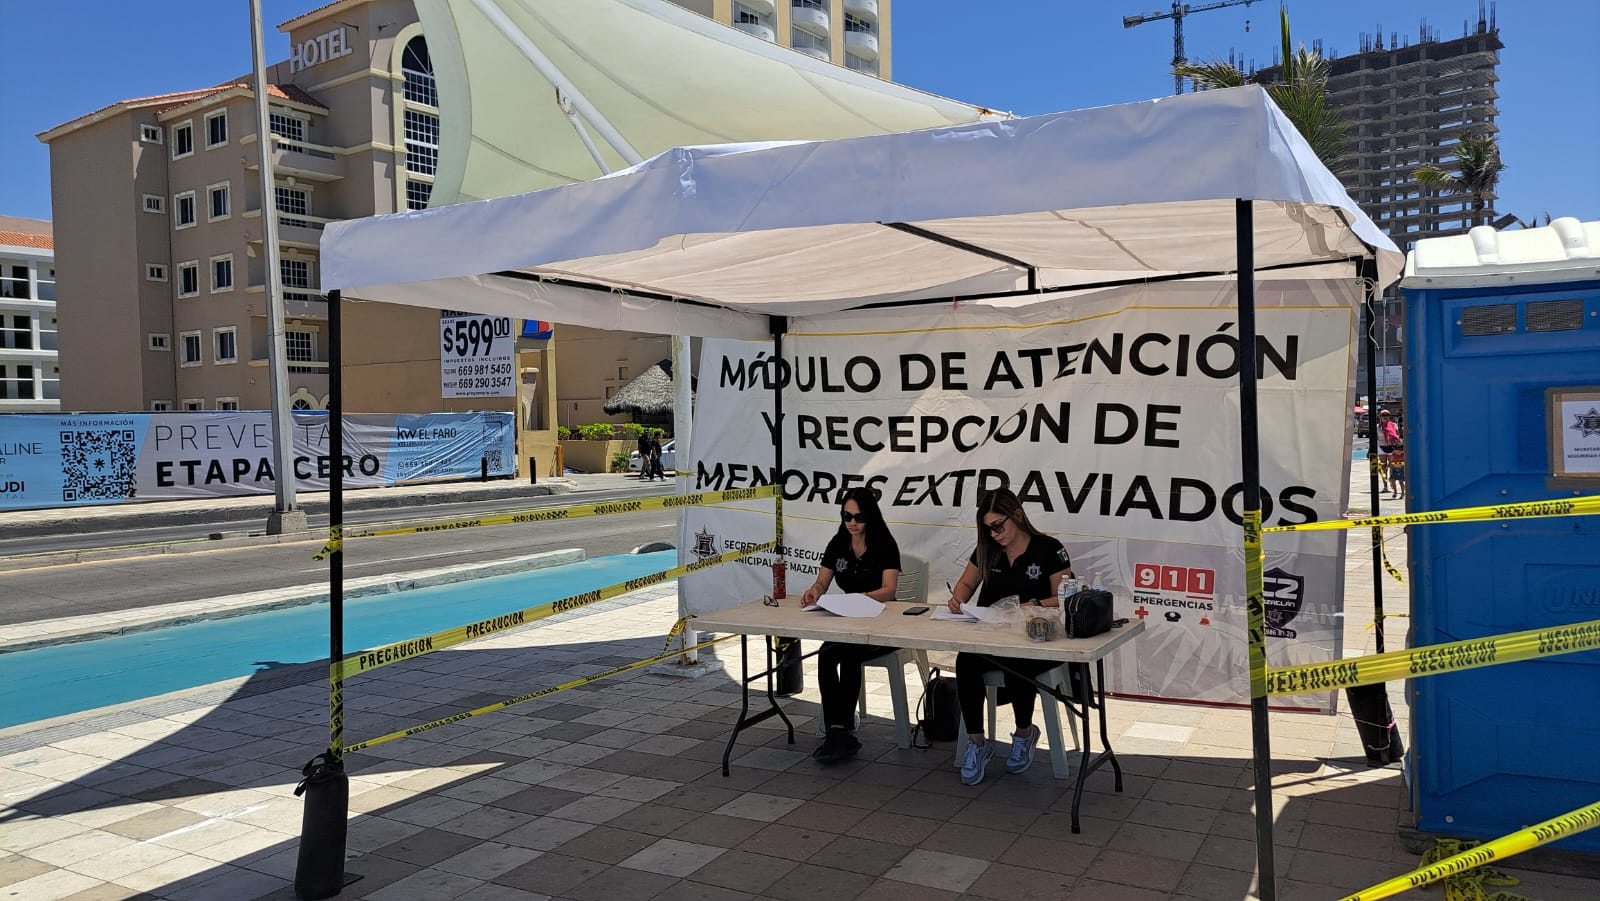 Módulos de atención y recepción de menores extraviados en Mazatlán